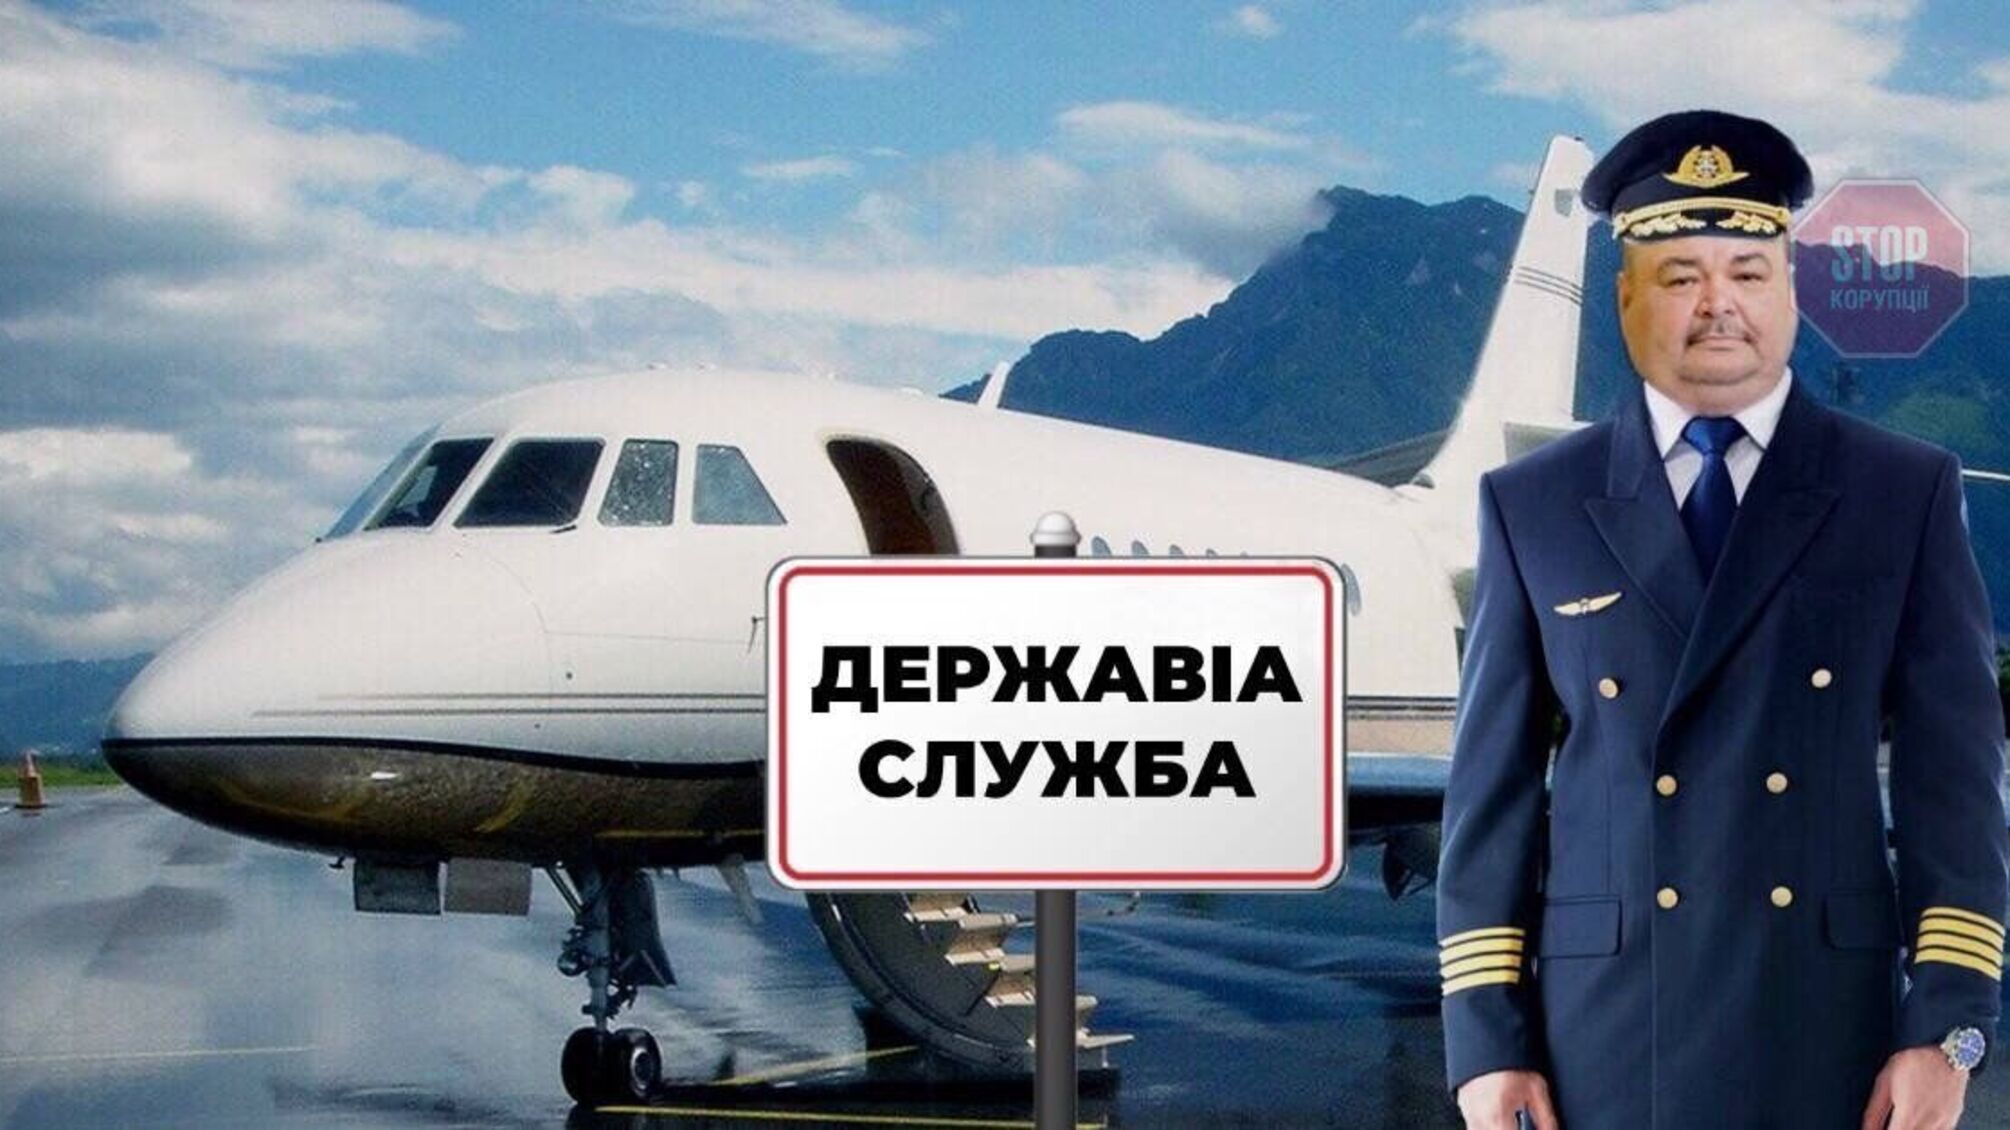 Партнер дружини чиновника Державіаслужби Коршука отримав авіаційні підряди на 300 мільйонів (подробиці)